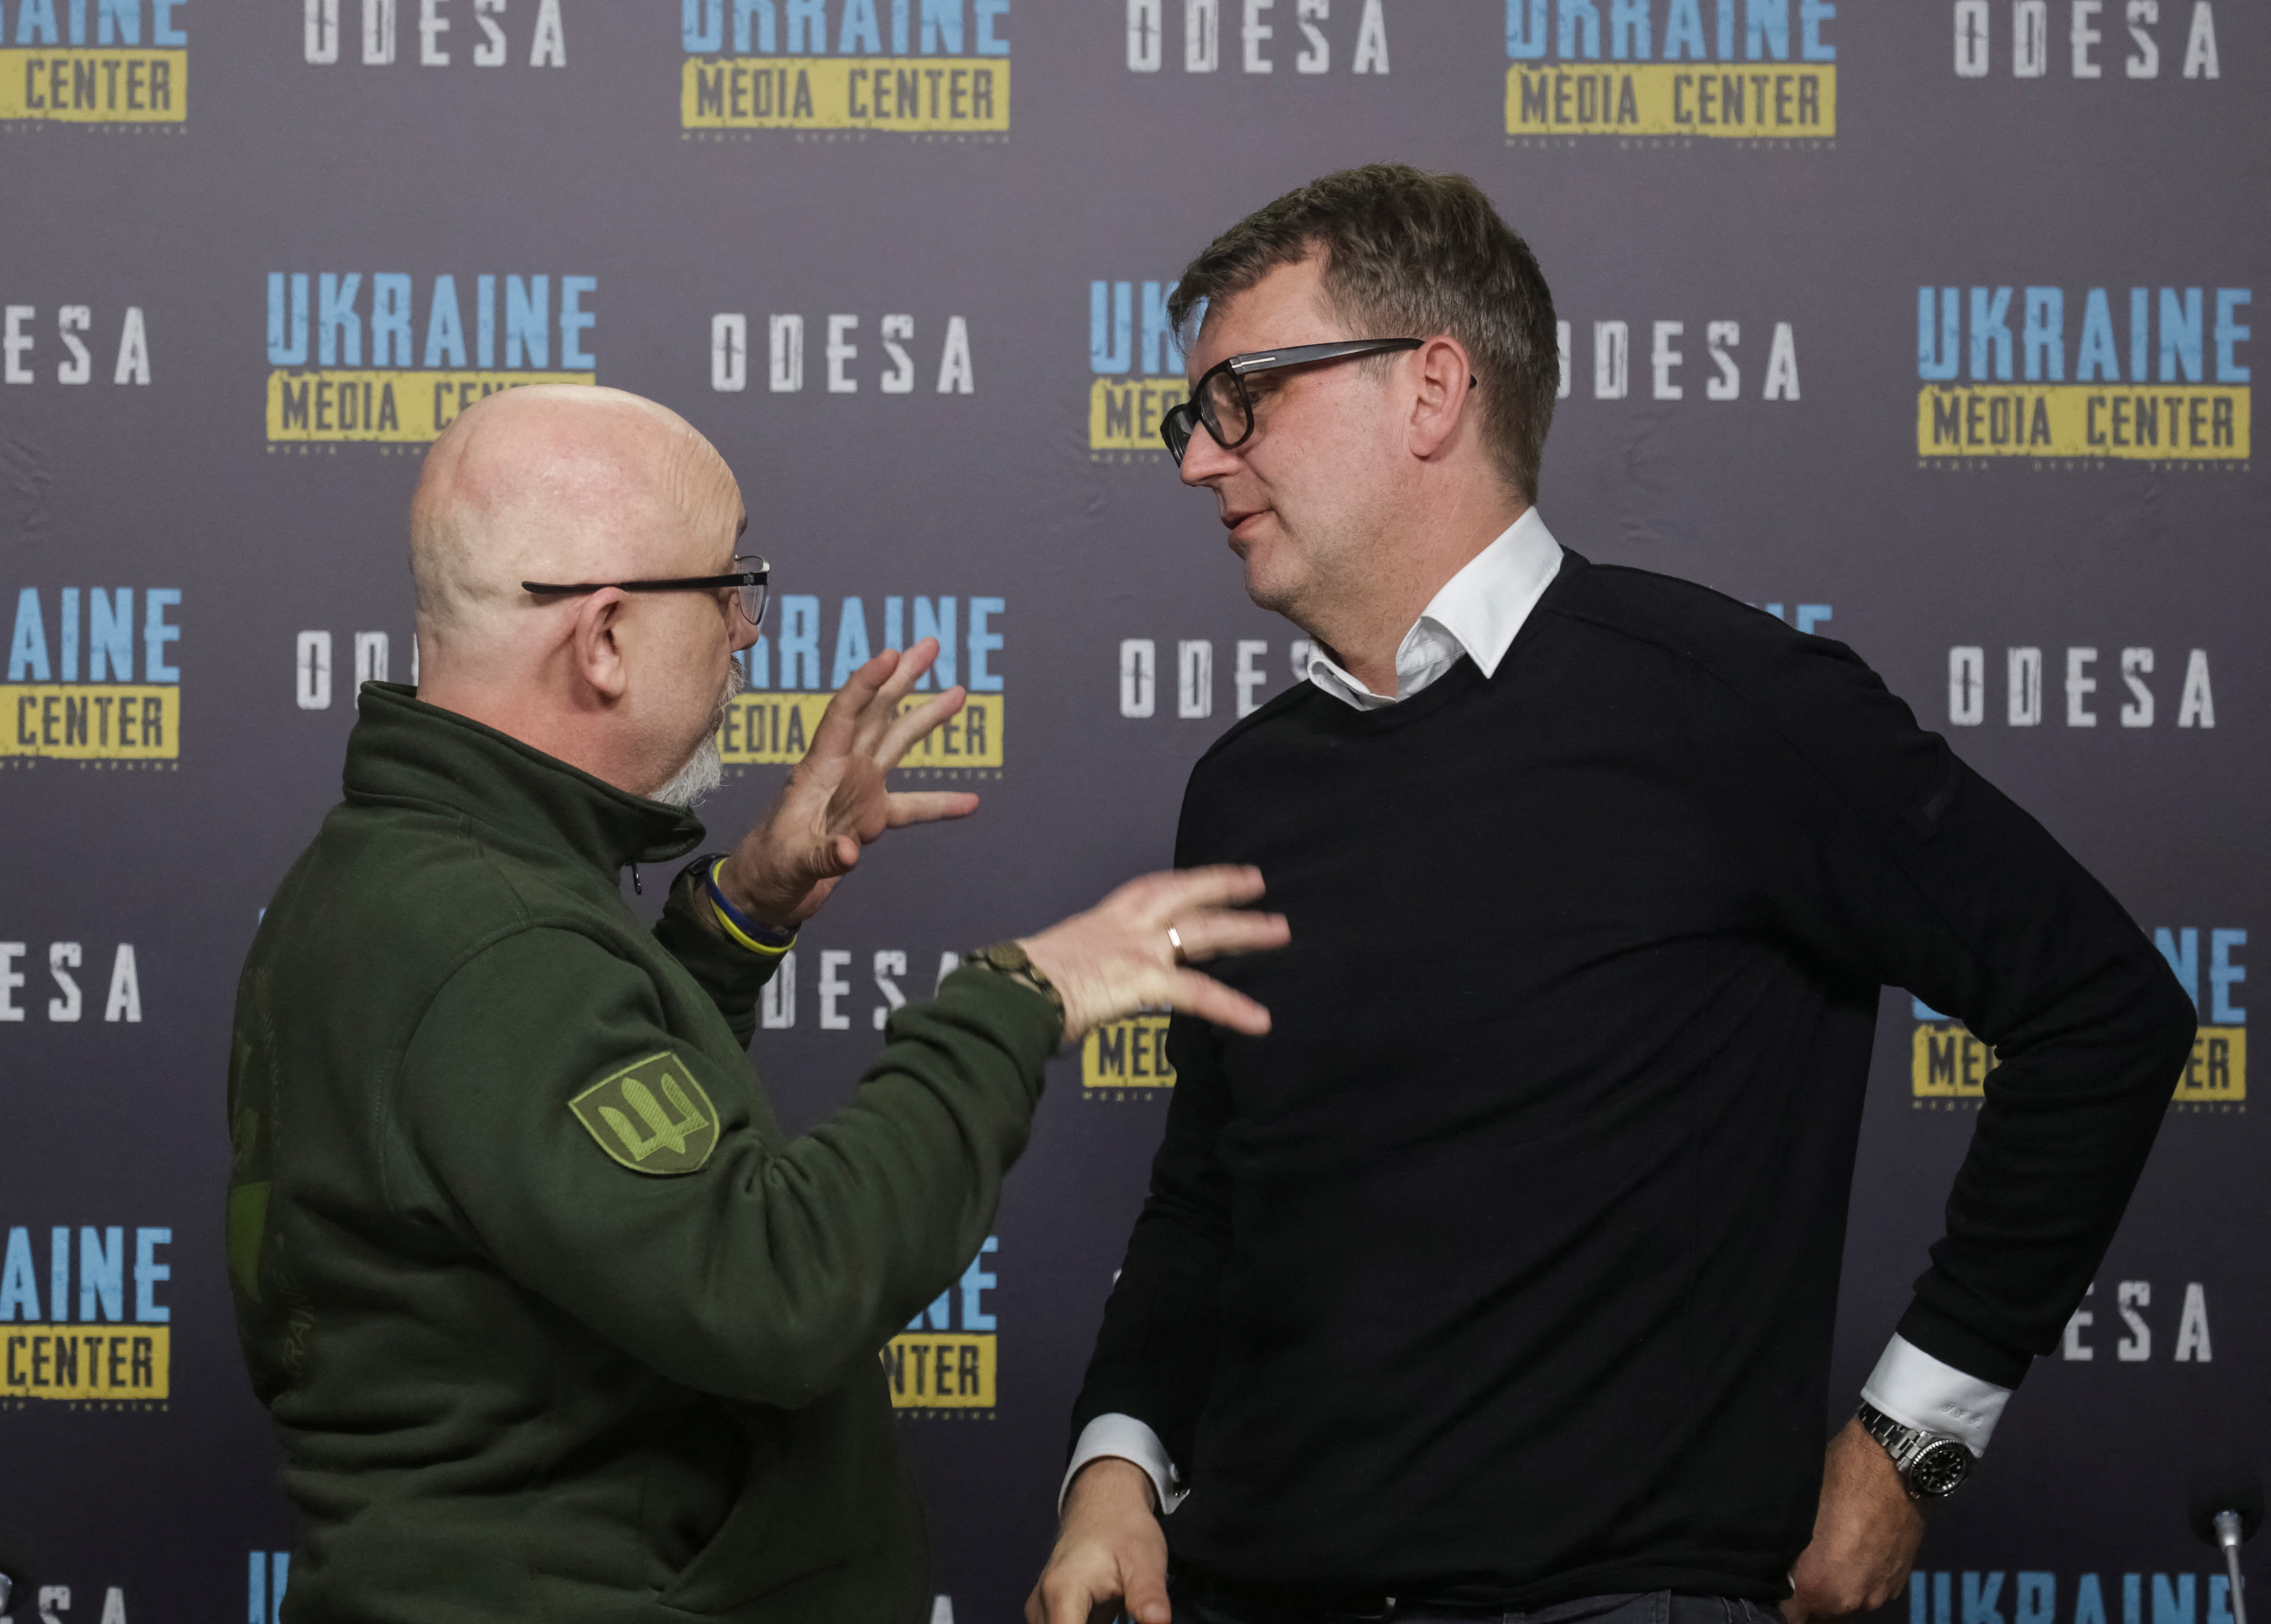 El ministro de Defensa de Ucrania, Oleksei Reznikov, junto a su homólogo danés, Troels Lund Poulsen (REUTERS/Serhii Smolientsev)